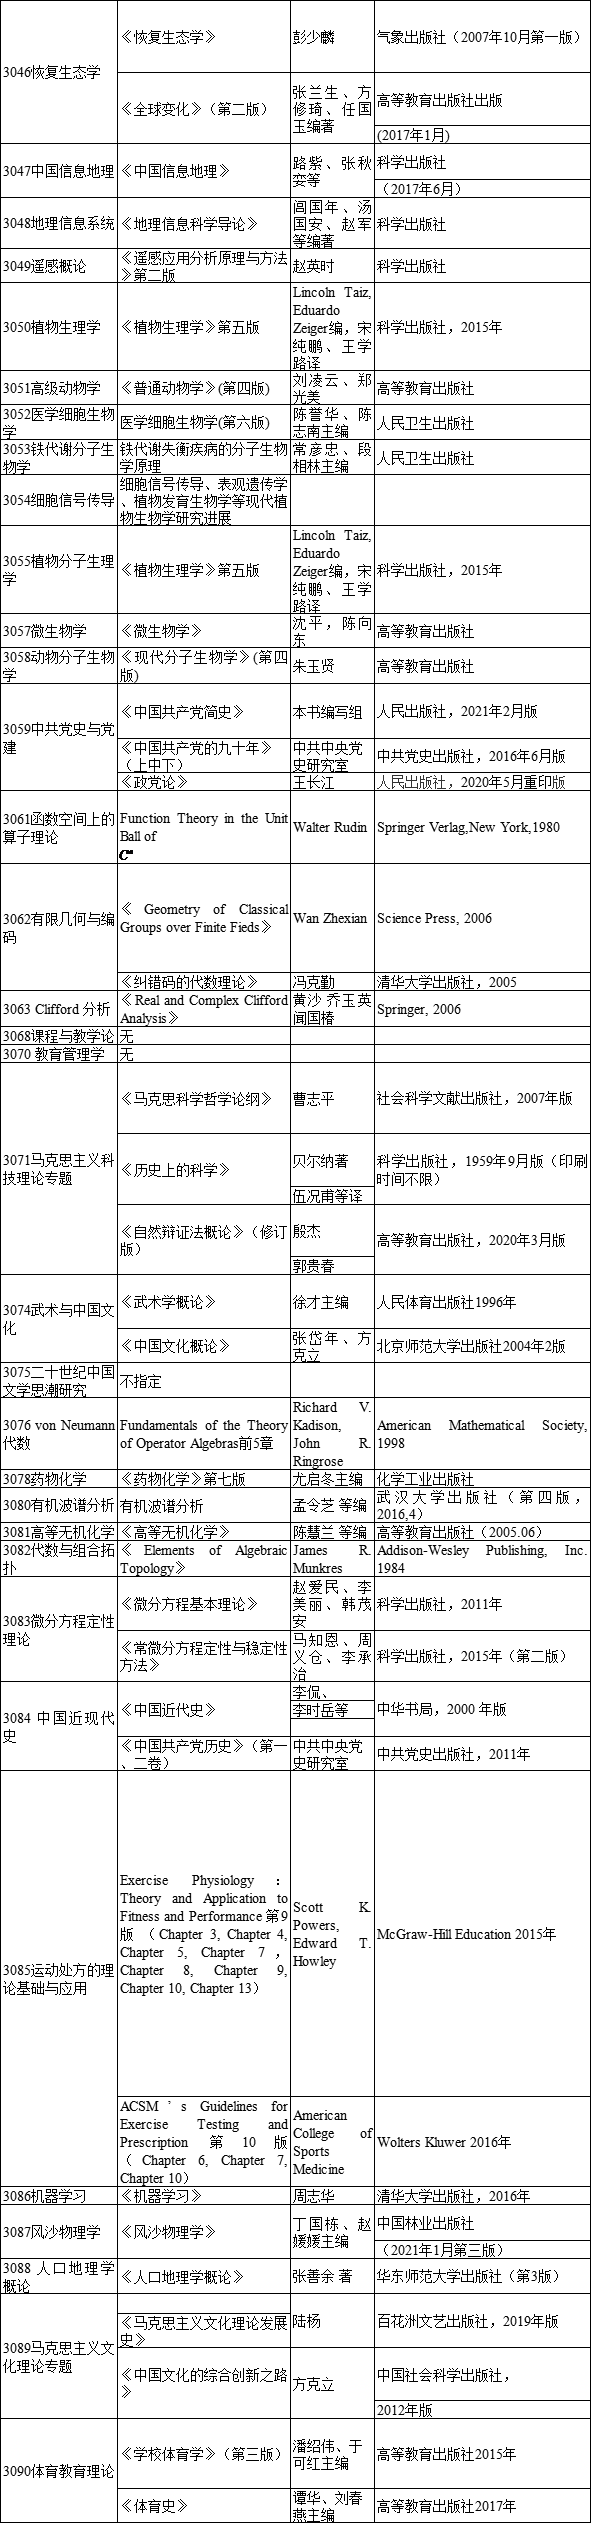 河北师范大学2022年博士研究生招生考试参考书目